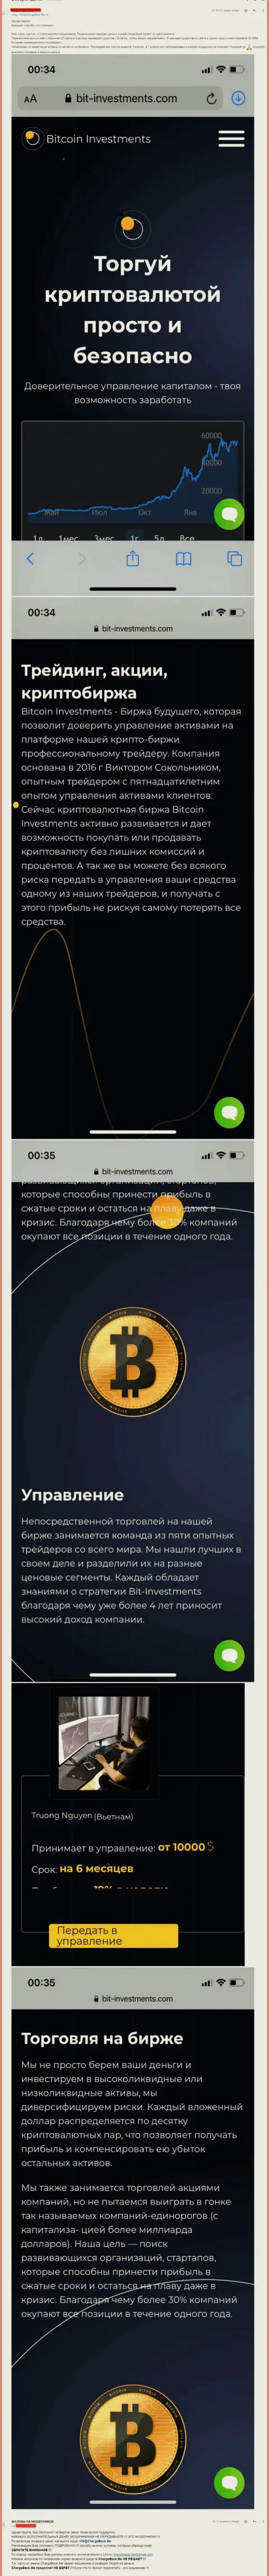 Держитесь от организации Bitcoin Investments как можно дальше, вытягивают средства !!! (отзыв)